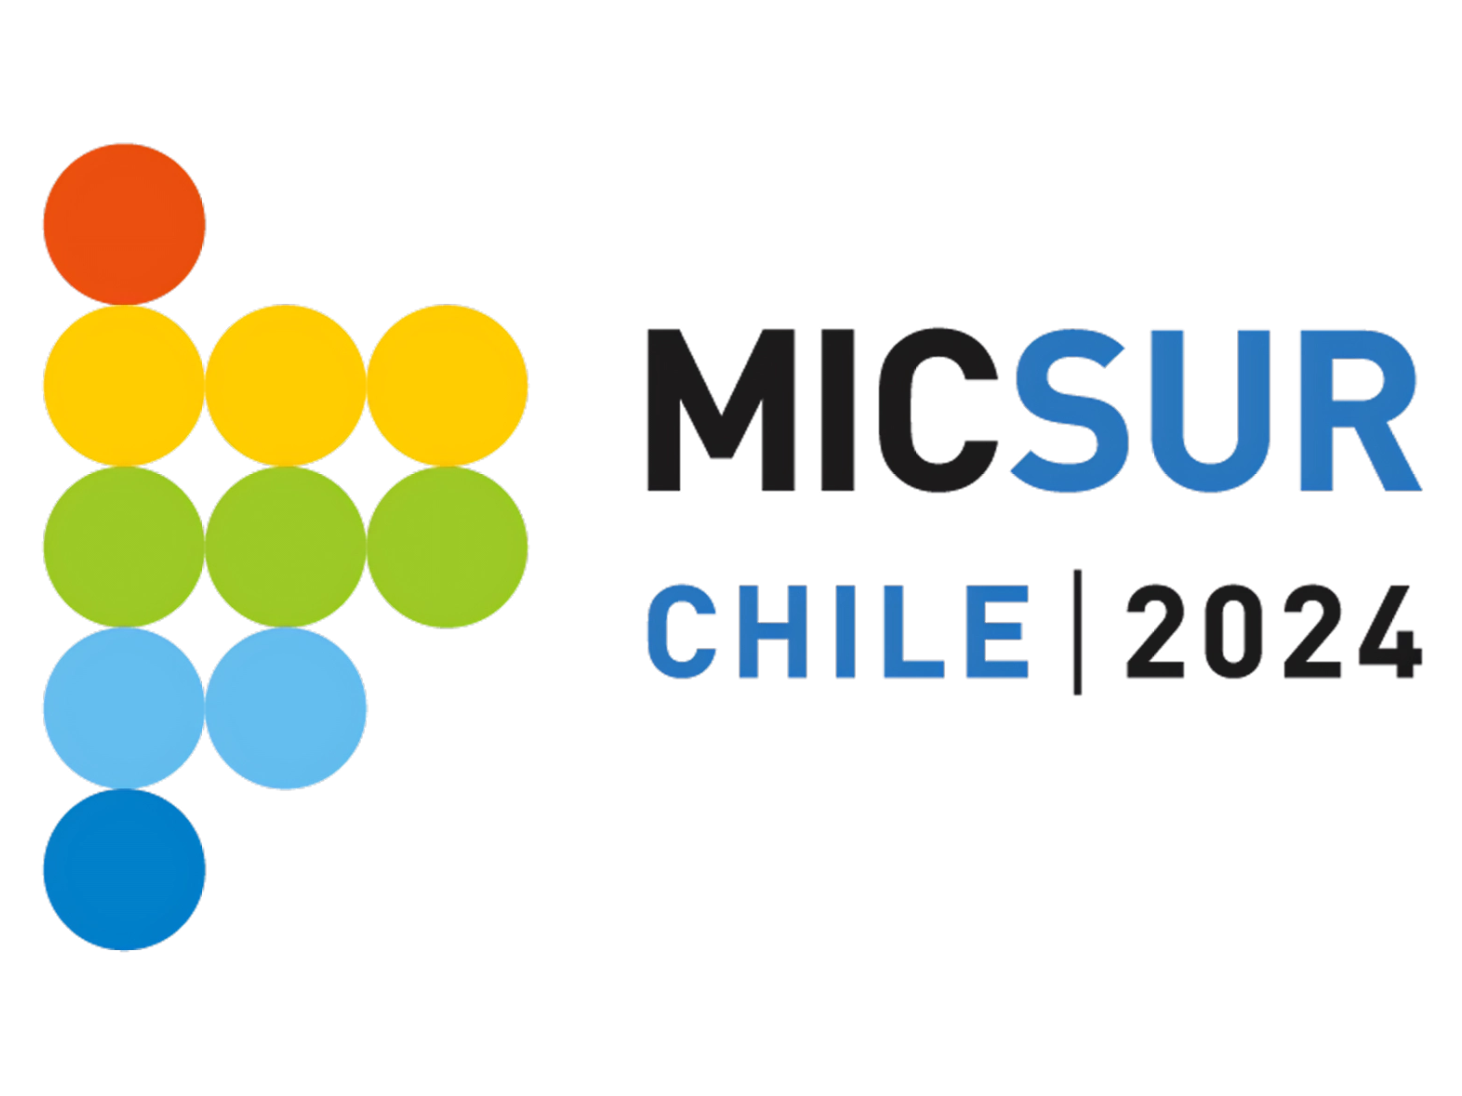 Logo con círculos en colores anaranjado, amarillo, verde y celeste, y las palabras MICSUR Chile 2024